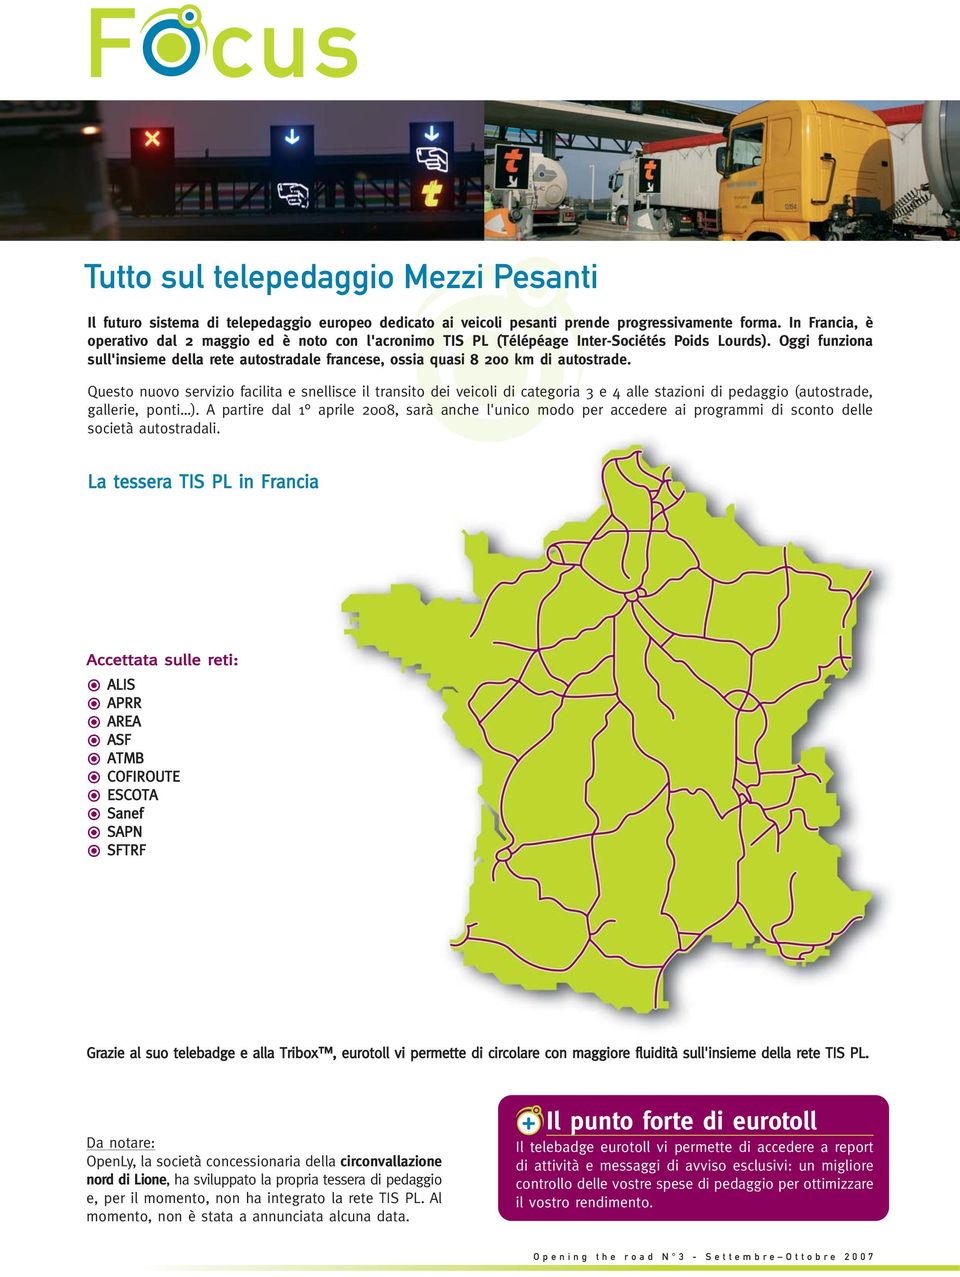 Oggi funziona sull'insieme della rete autostradale francese, ossia quasi 8 200 km di autostrade.